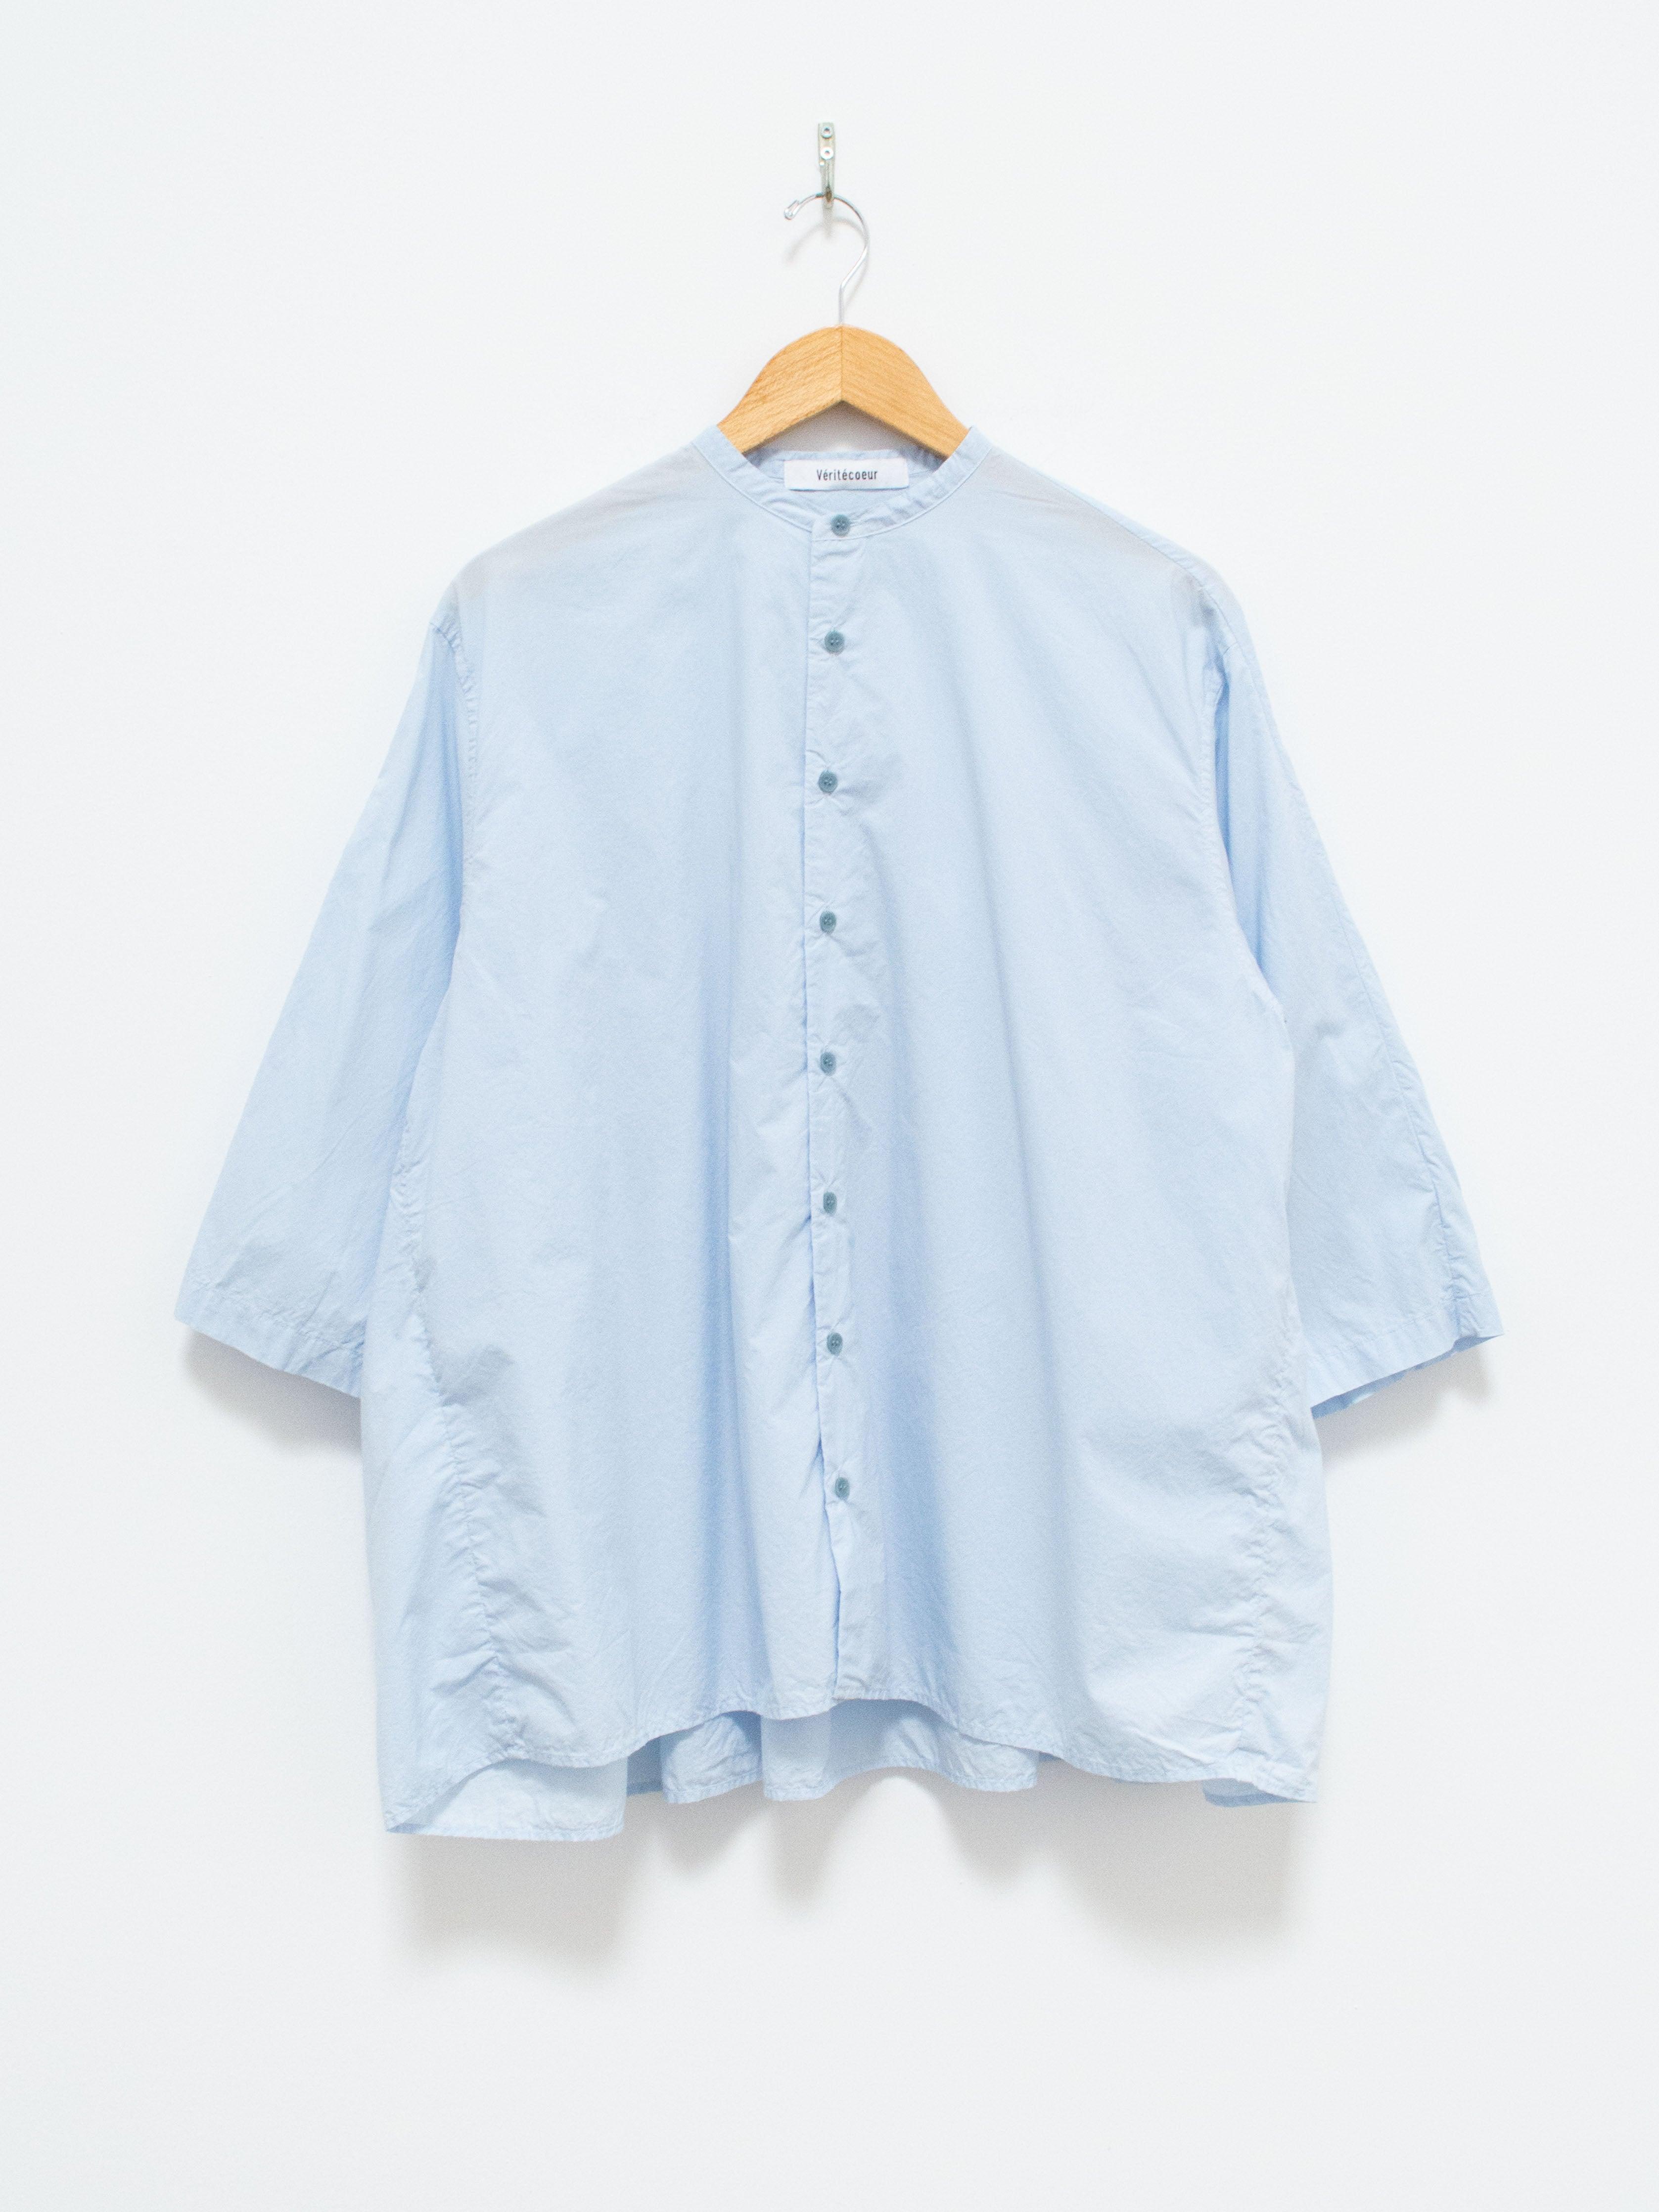 Namu Shop - Veritecoeur Typewriter Cotton Gather Back Shirt - Light Blue